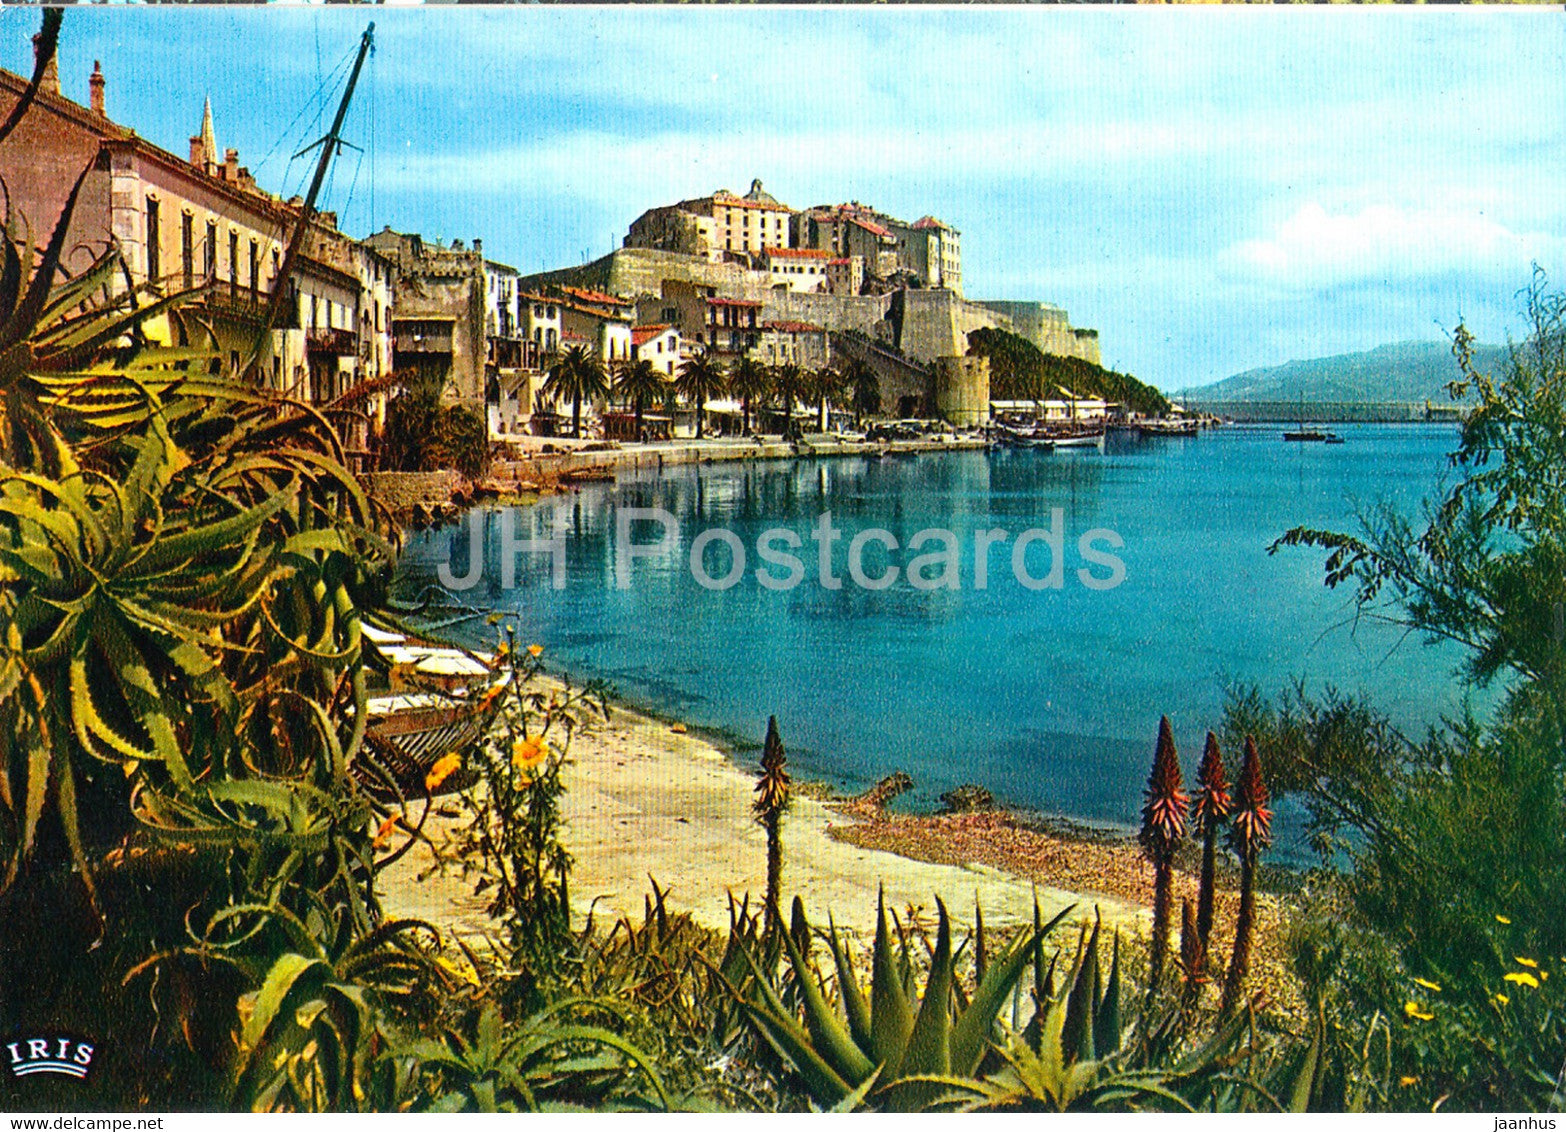 La Citadelle de Calvi - Charmes et couleurs de la Corse - France - unused - JH Postcards